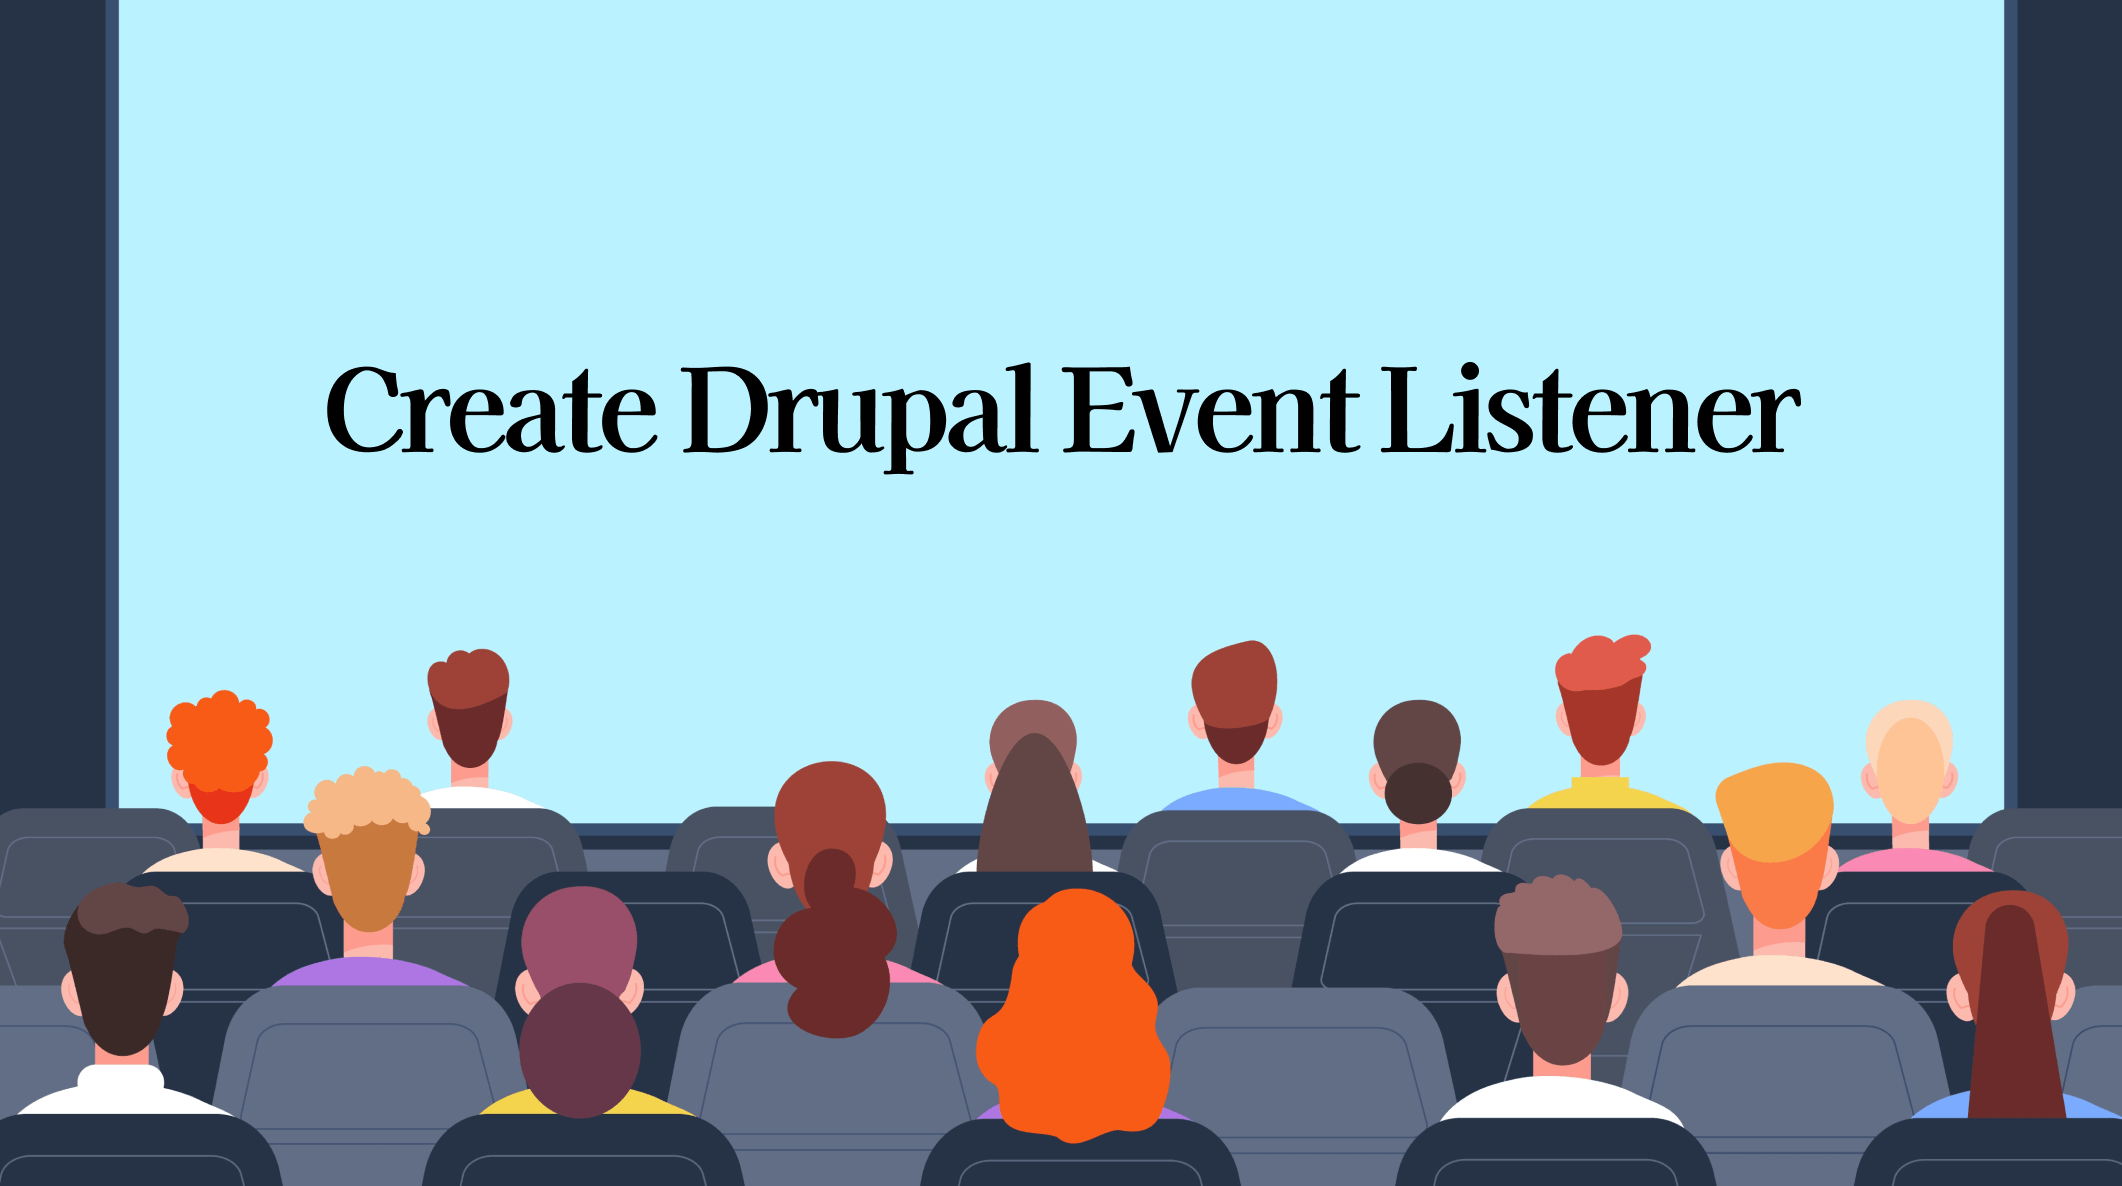 Create Drupal Event Listener image